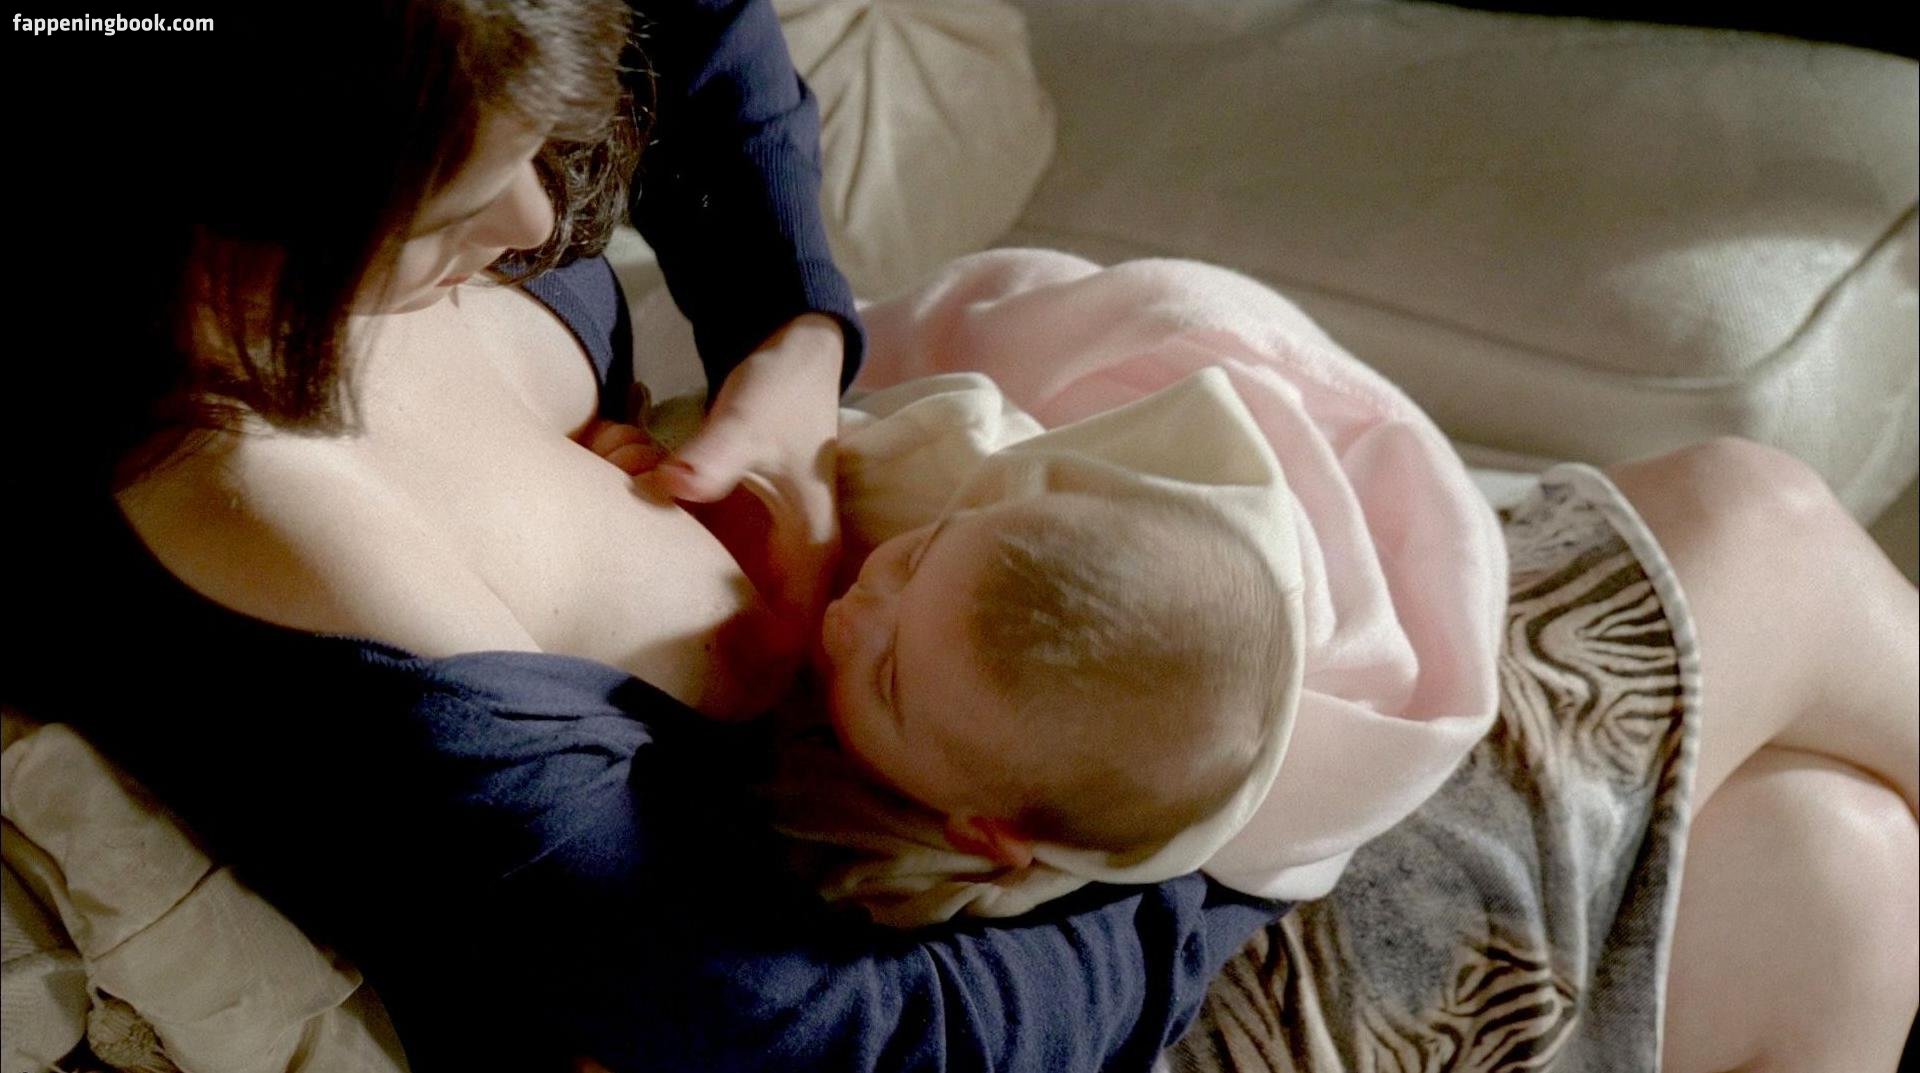 Cara Buono Breasts Feeding – The Sopranos (0:11) | NudeBase.com